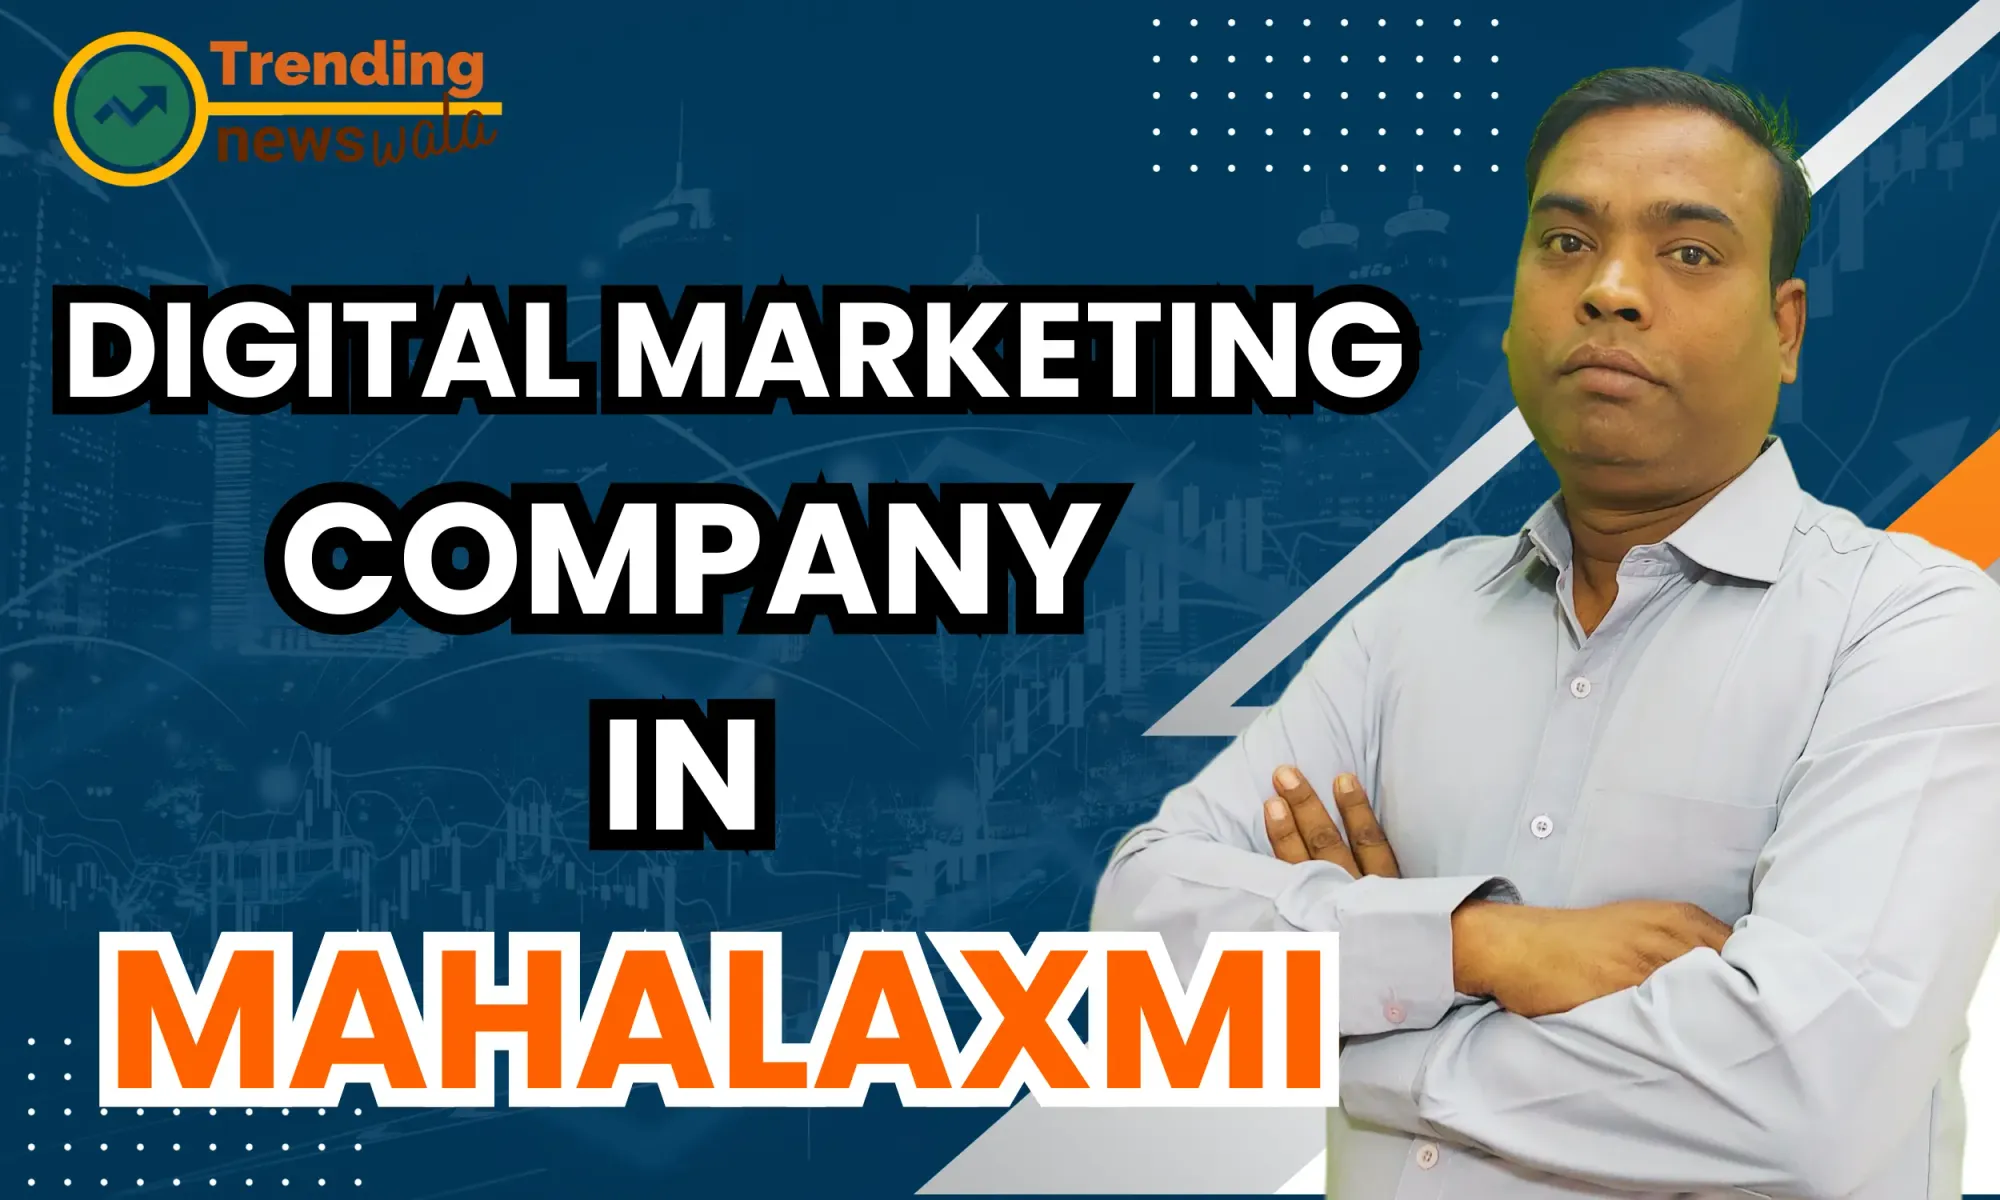 Digital Marketing Company In Mahalaxmi